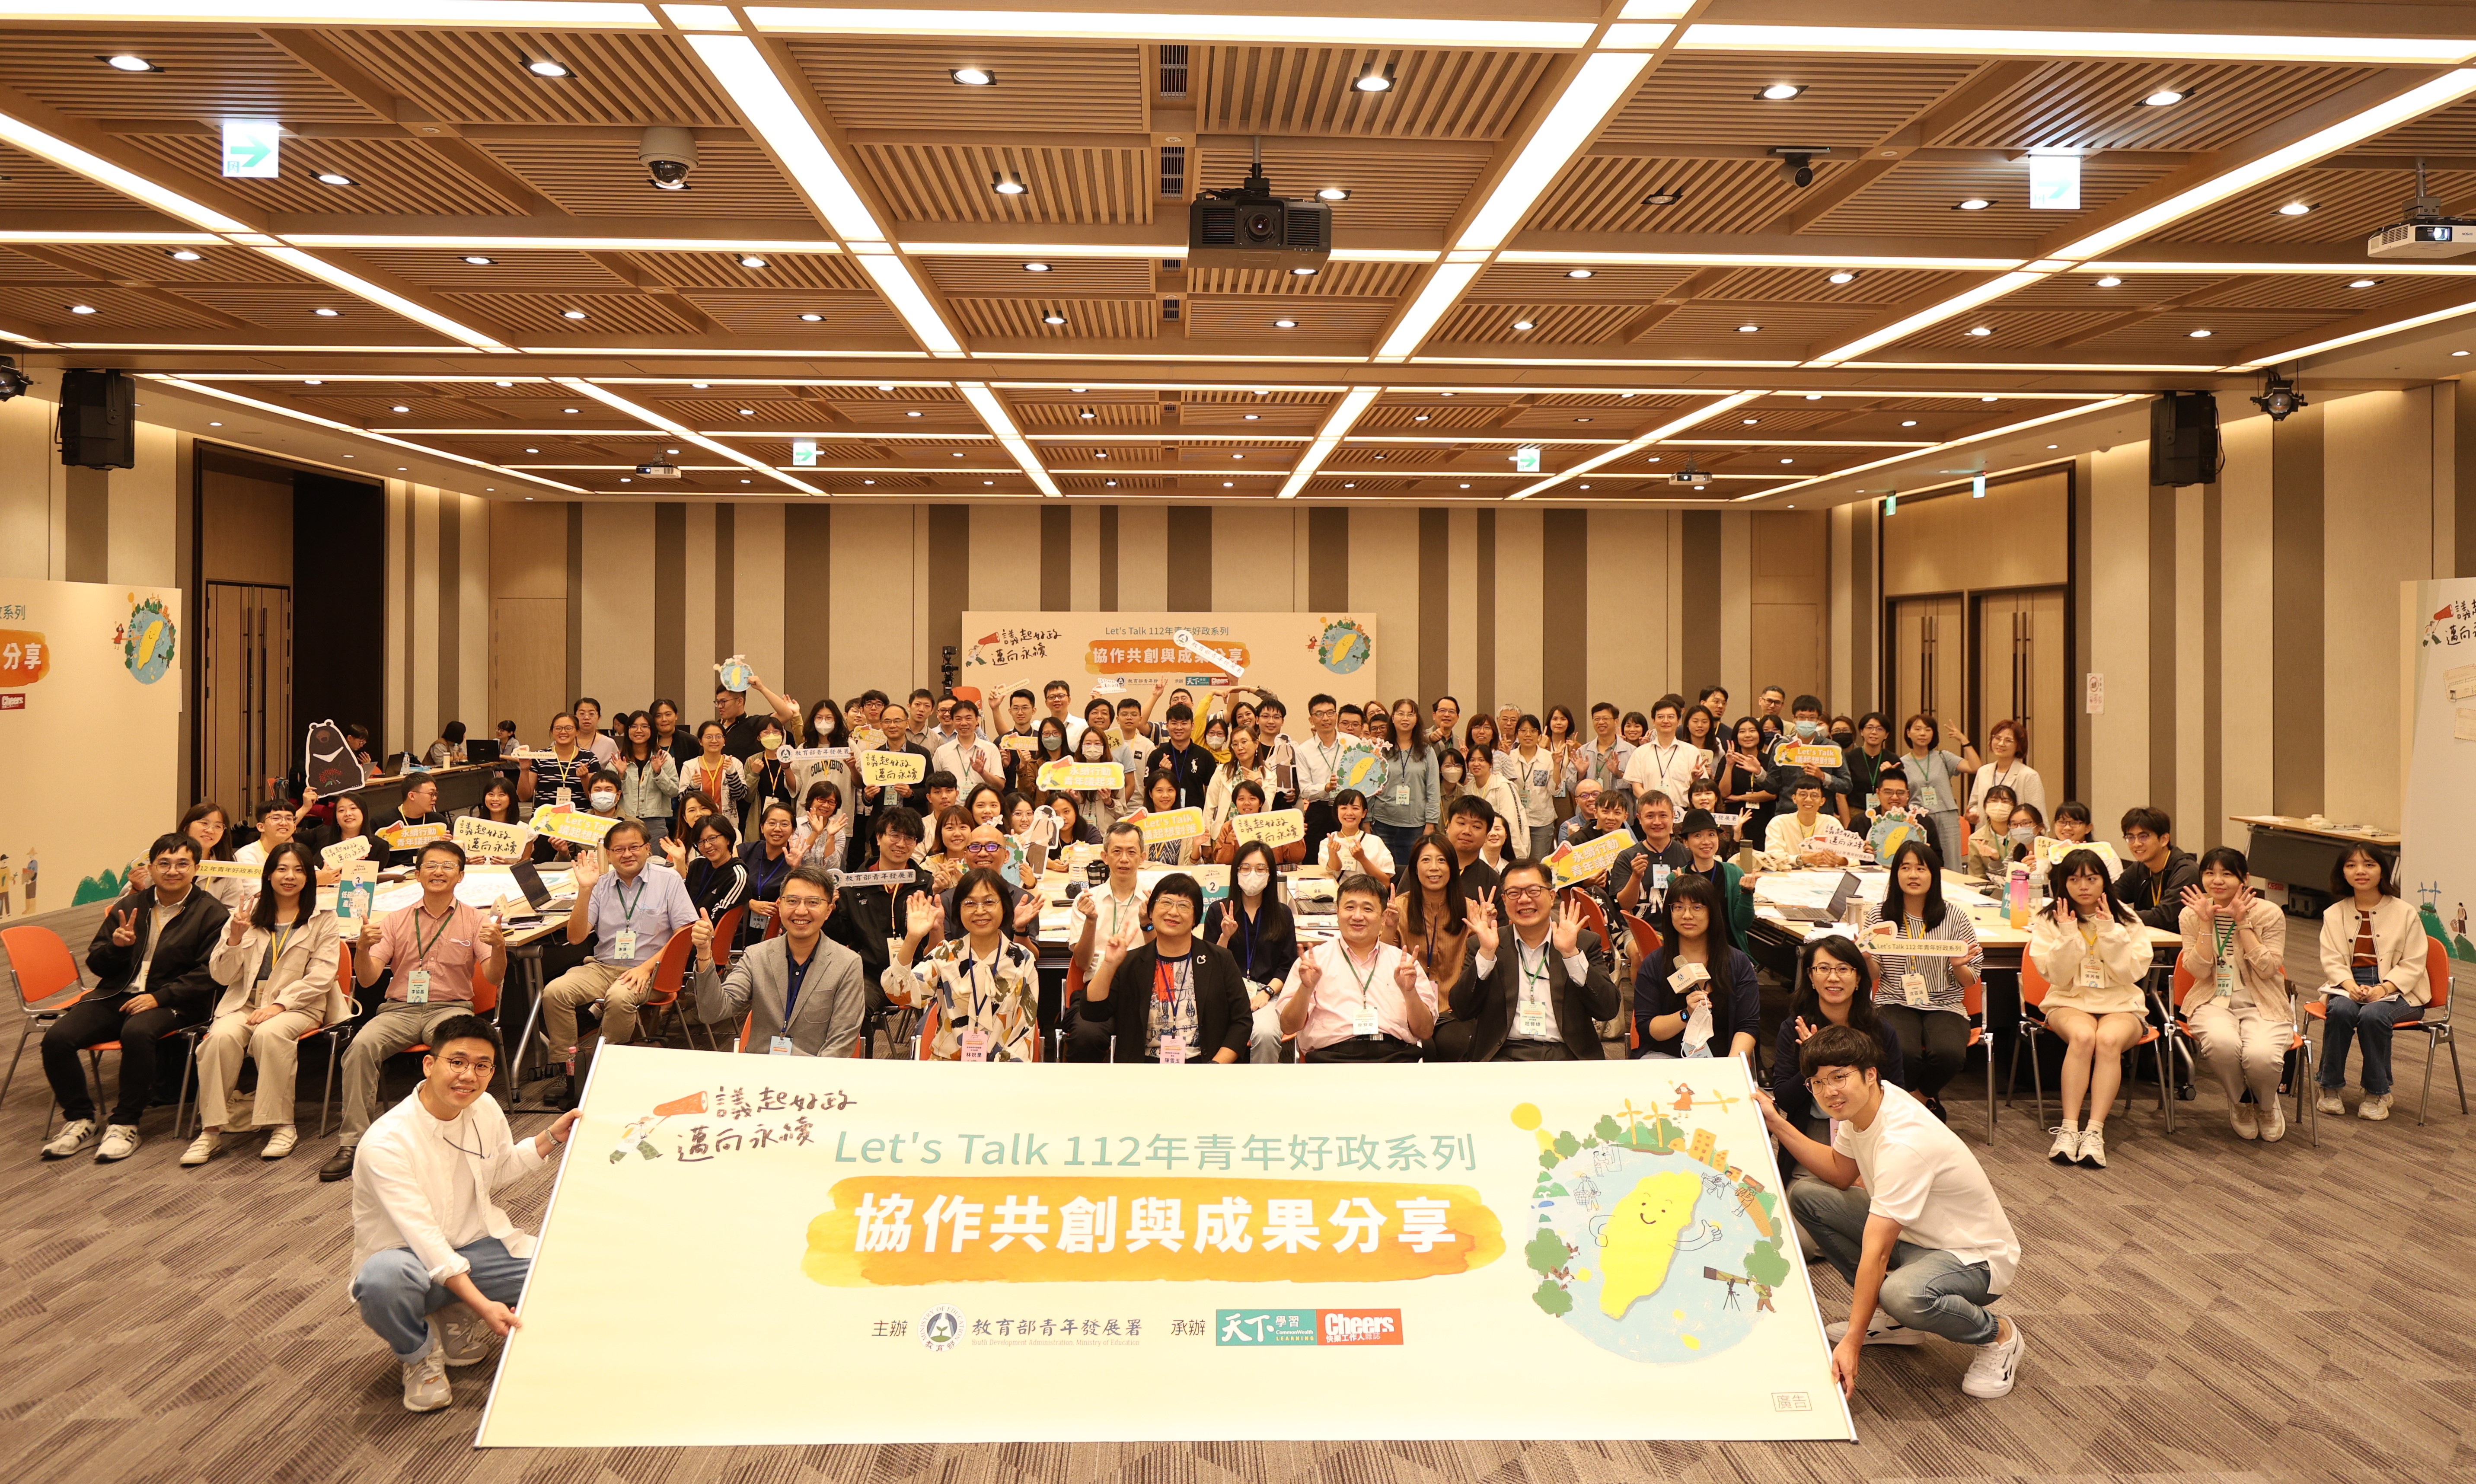 青年署邀請近百名相關部會與青年執行團隊共創「2050淨零排放願景」